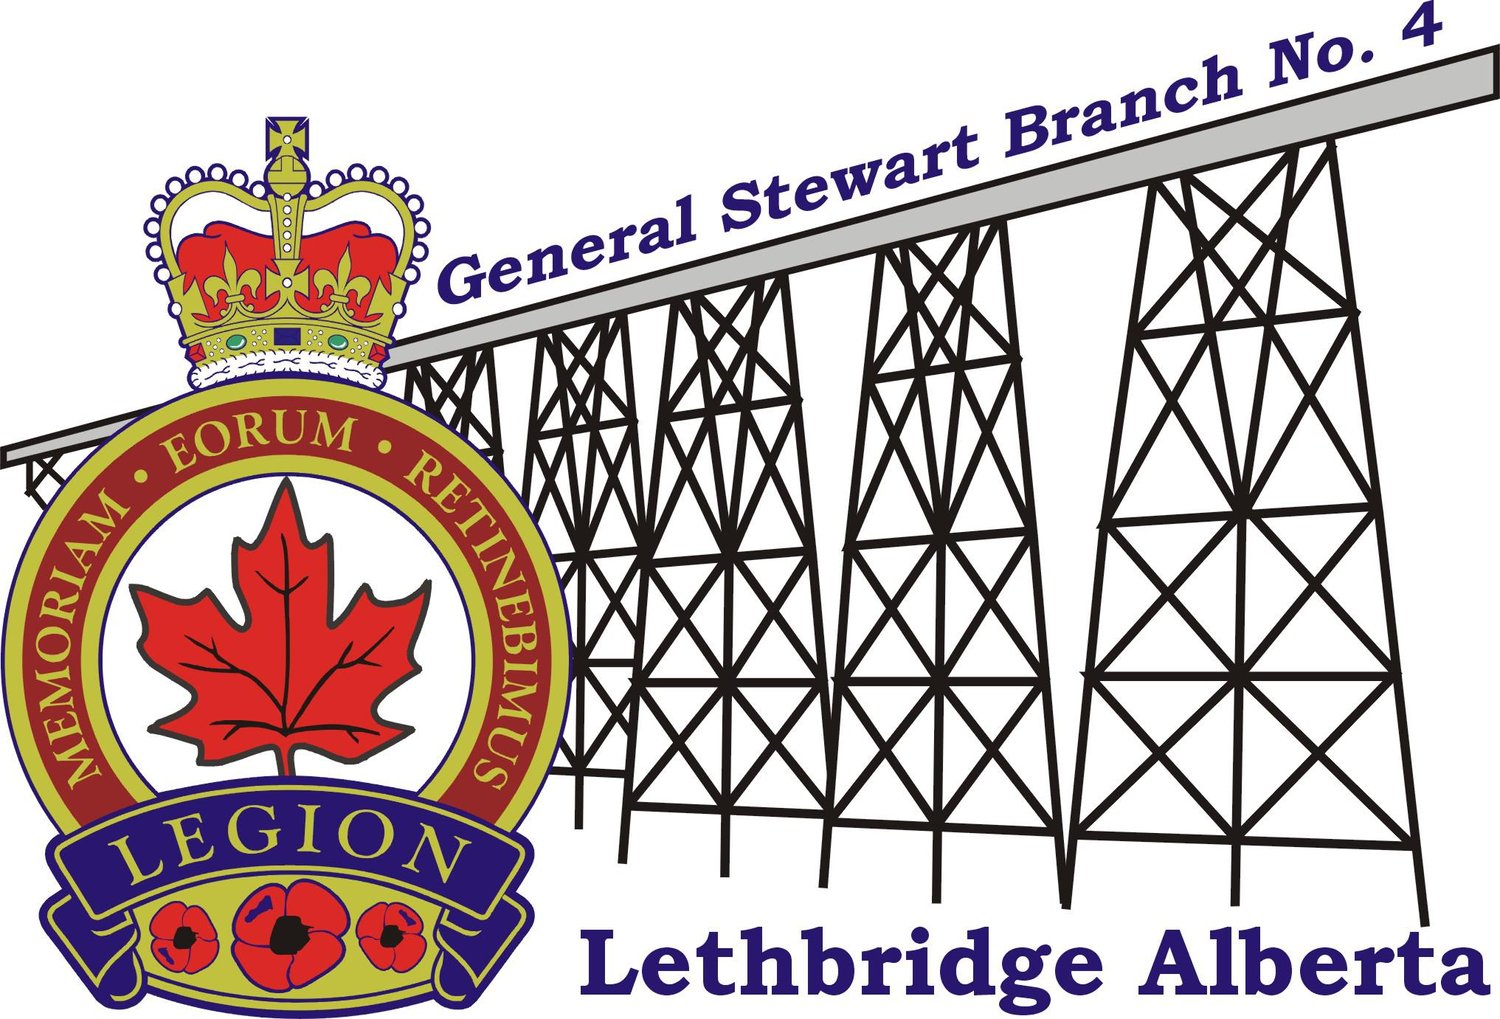 Royal Canadian Legion General Stewart Branch No.4